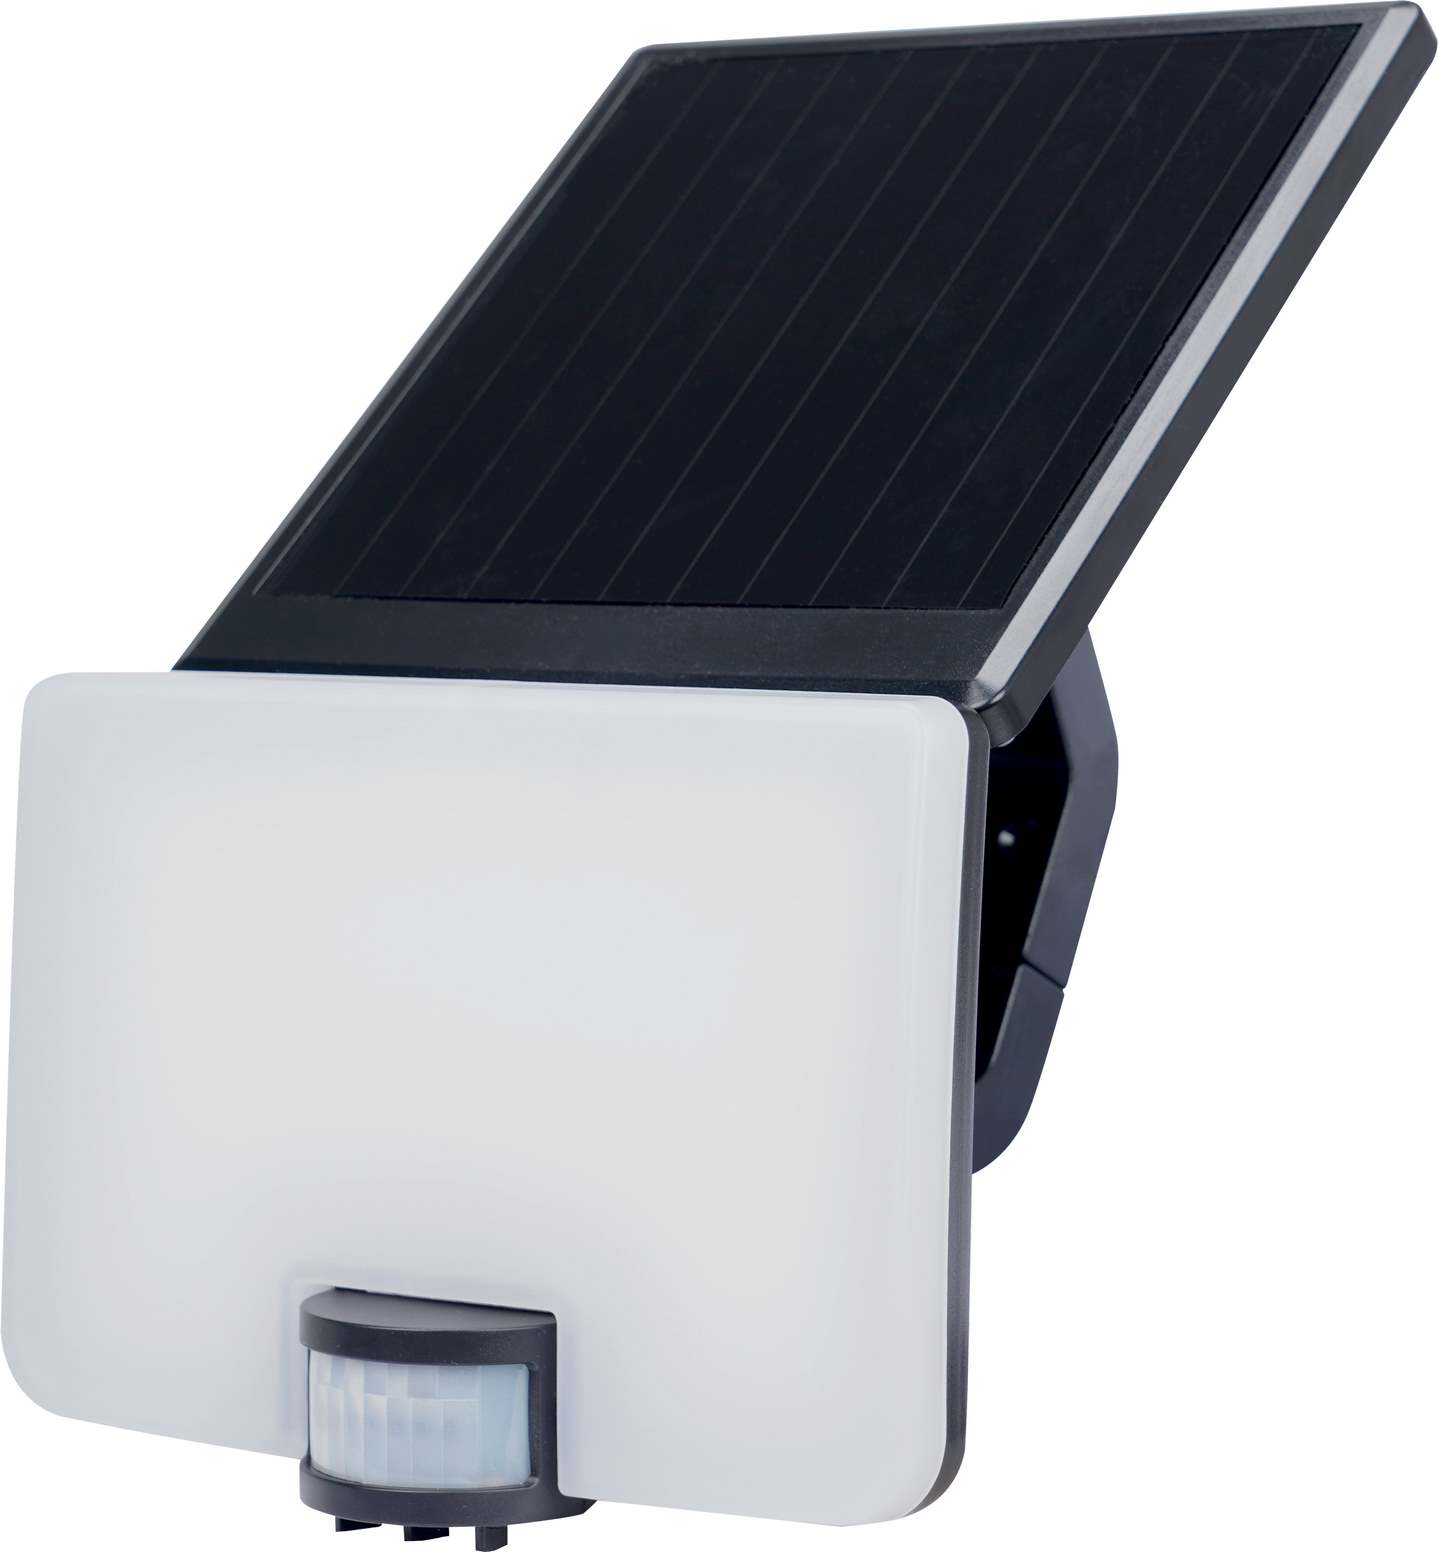 LED solární svítidlo PERPET SOLAR PIR 8W, 4000K NW, 800lm, IP54, PIR, Greenlux GXSO020 - zvìtšit obrázek